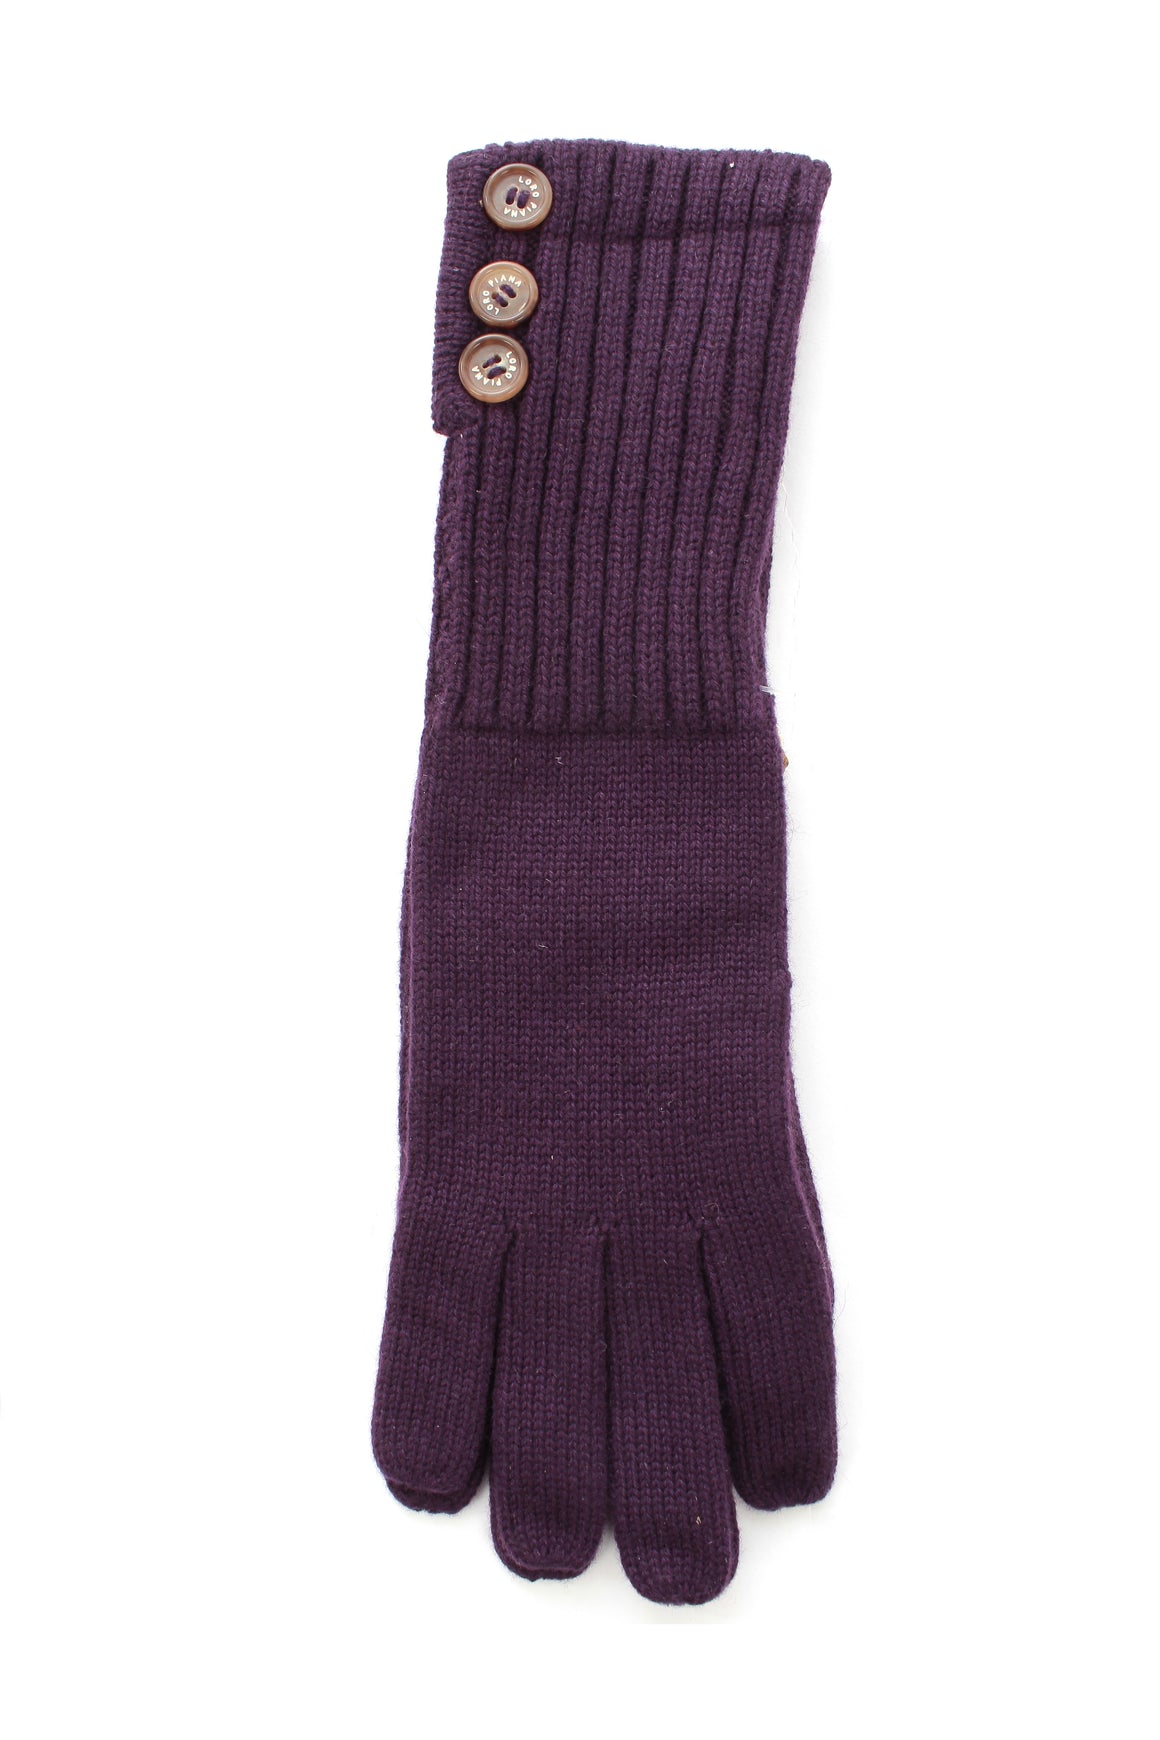 Loro Piana Buttoned Cashmere Gloves